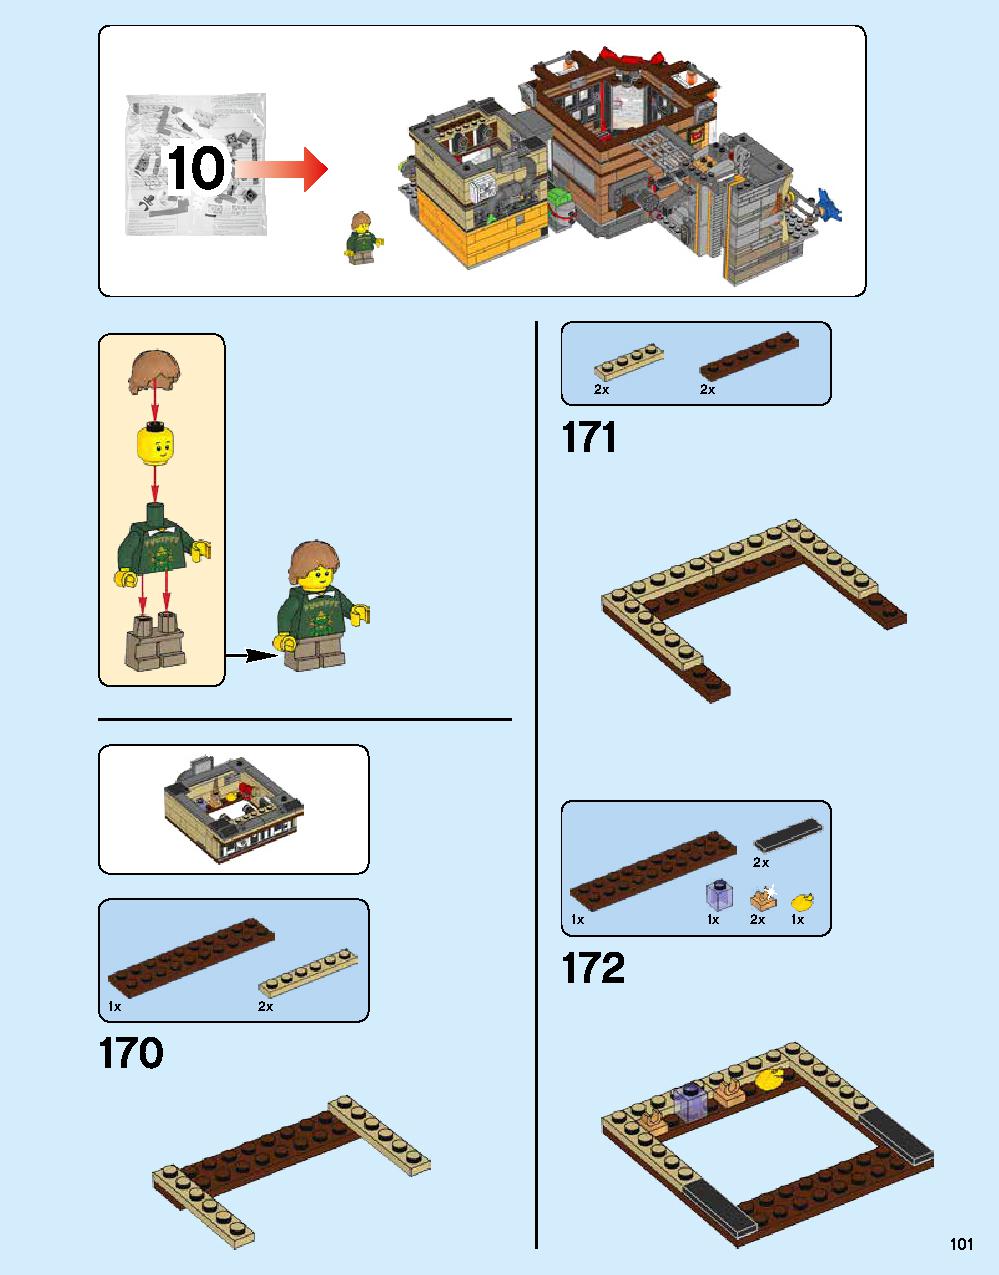 ニンジャゴー シティ 70620 レゴの商品情報 レゴの説明書・組立方法 101 page